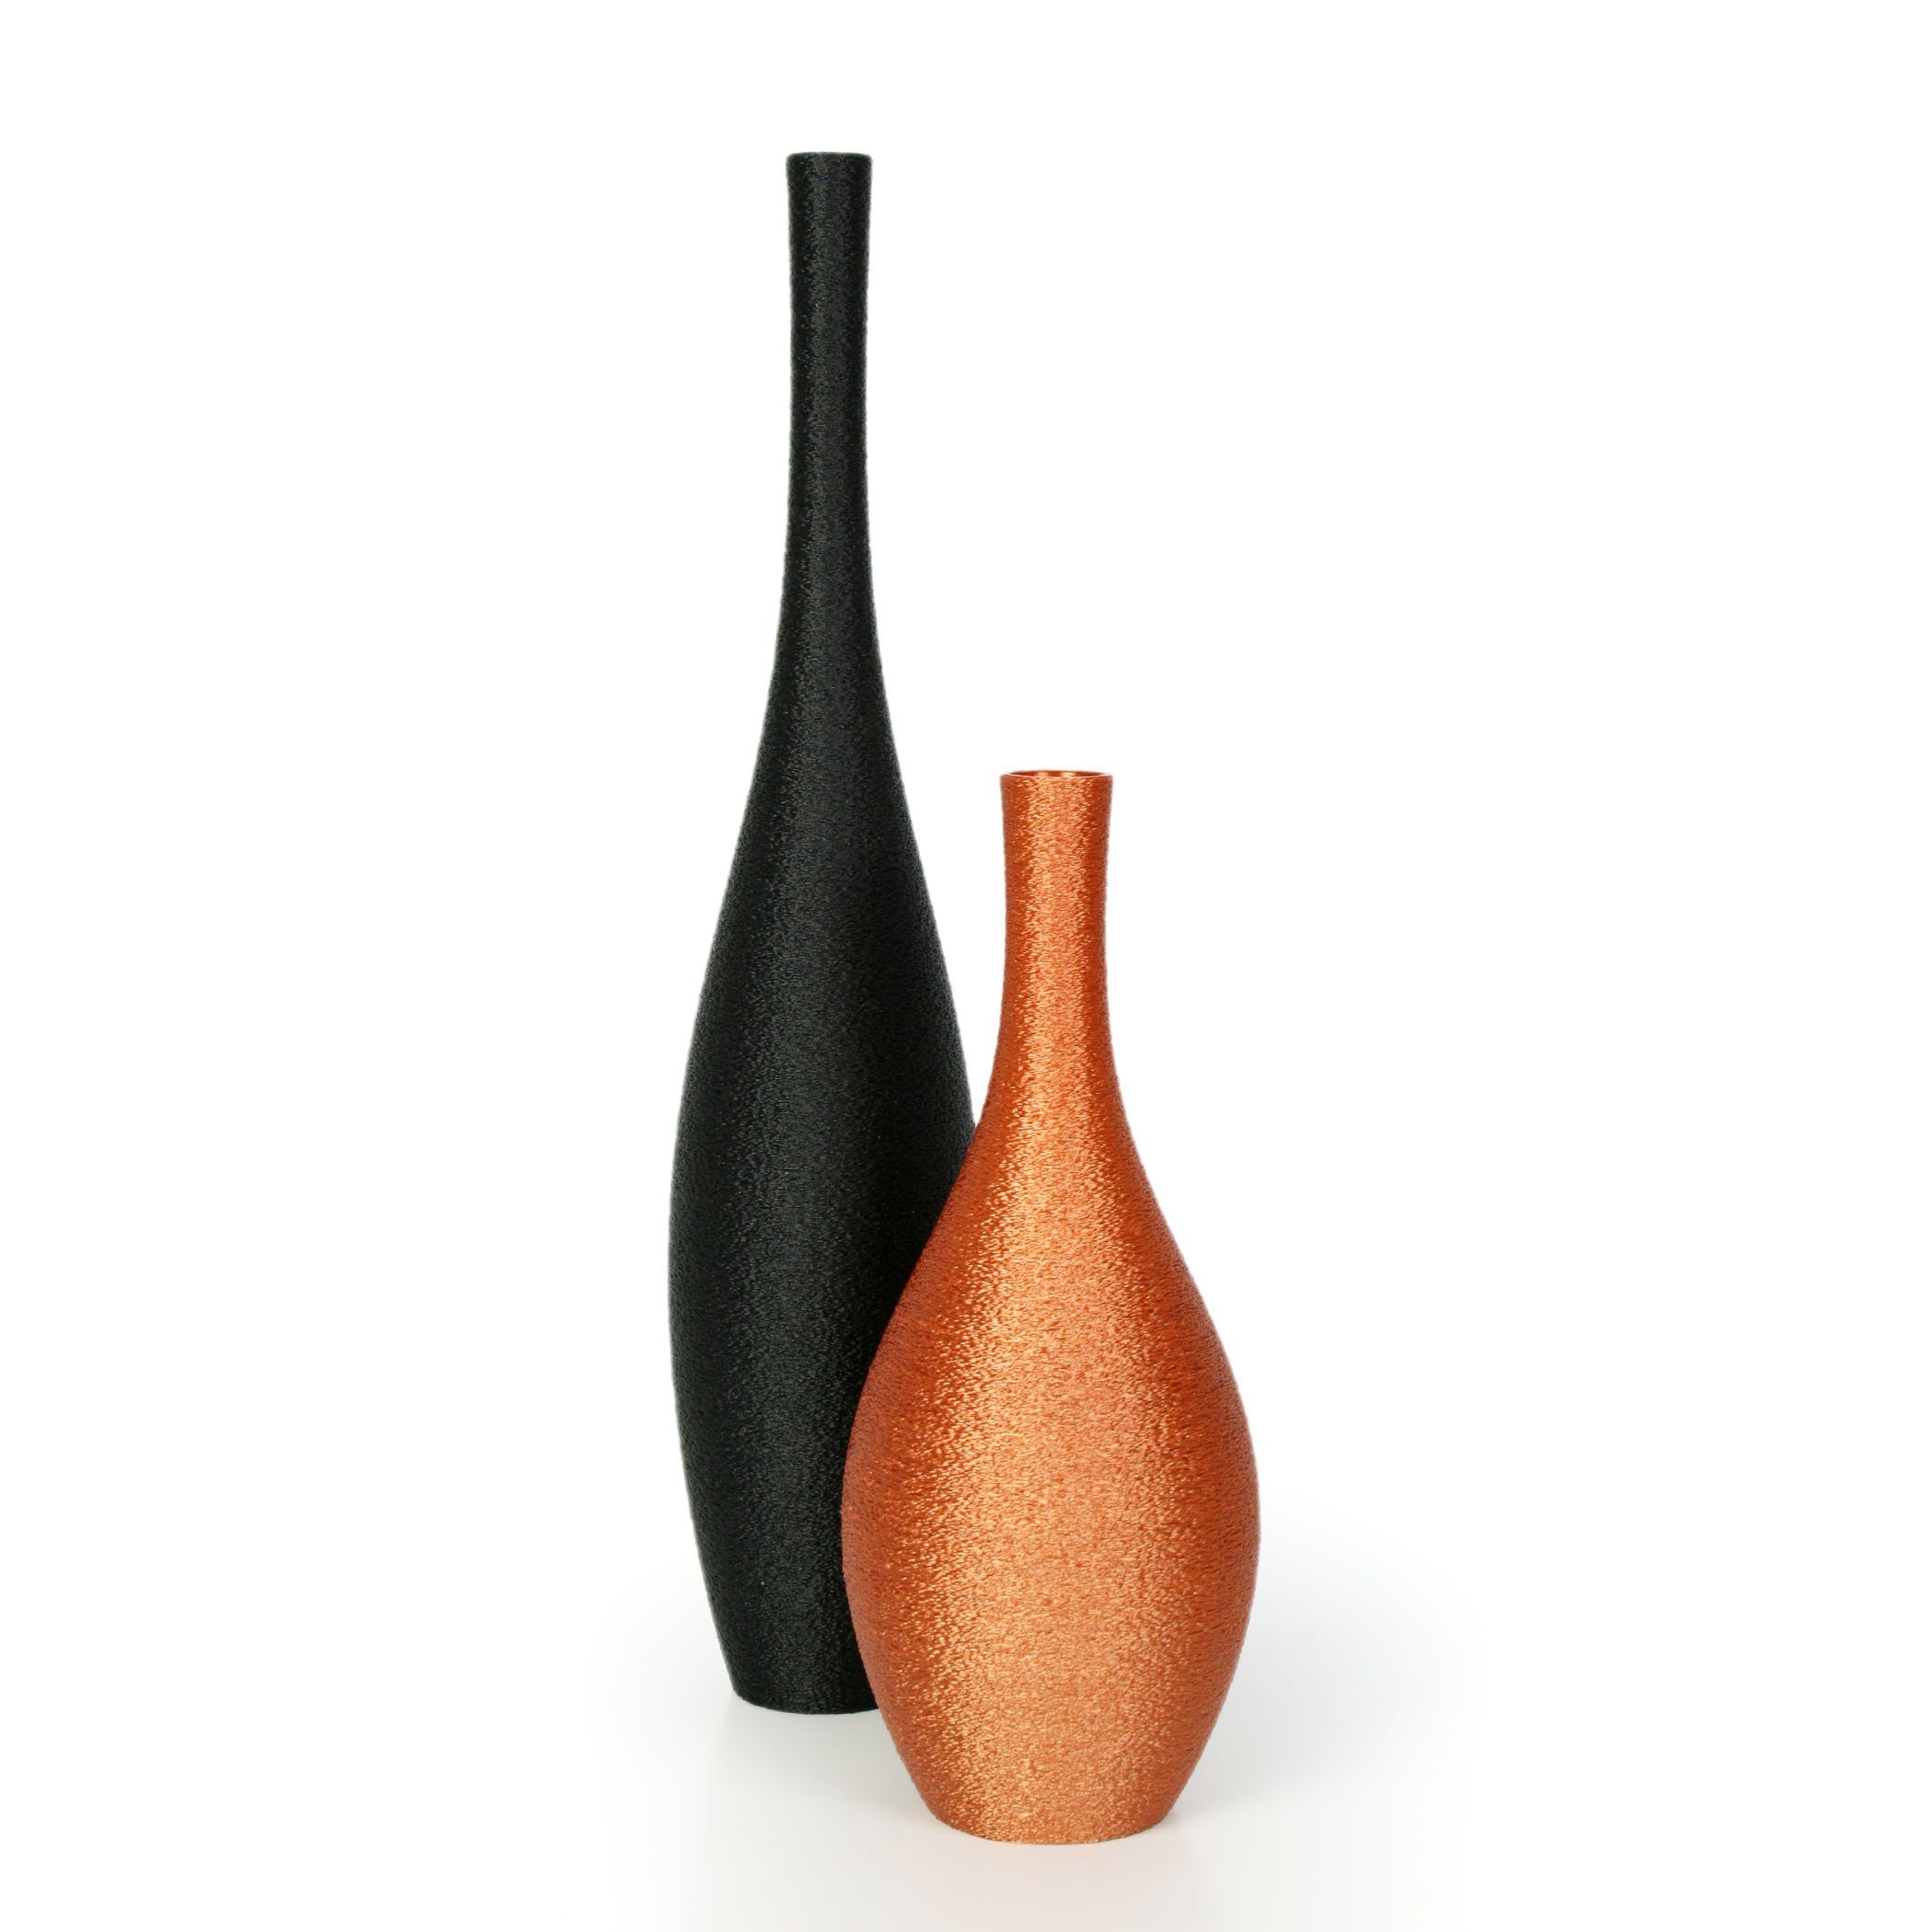 Kreative Feder Dekovase Designer Vasen-Set – Dekorative Blumenvasen aus Bio-Kunststoff (Set, Set bestehend aus 2 Vasen), aus nachwachsenden Rohstoffen; wasserdicht & bruchsicher Schwarz & Bronze